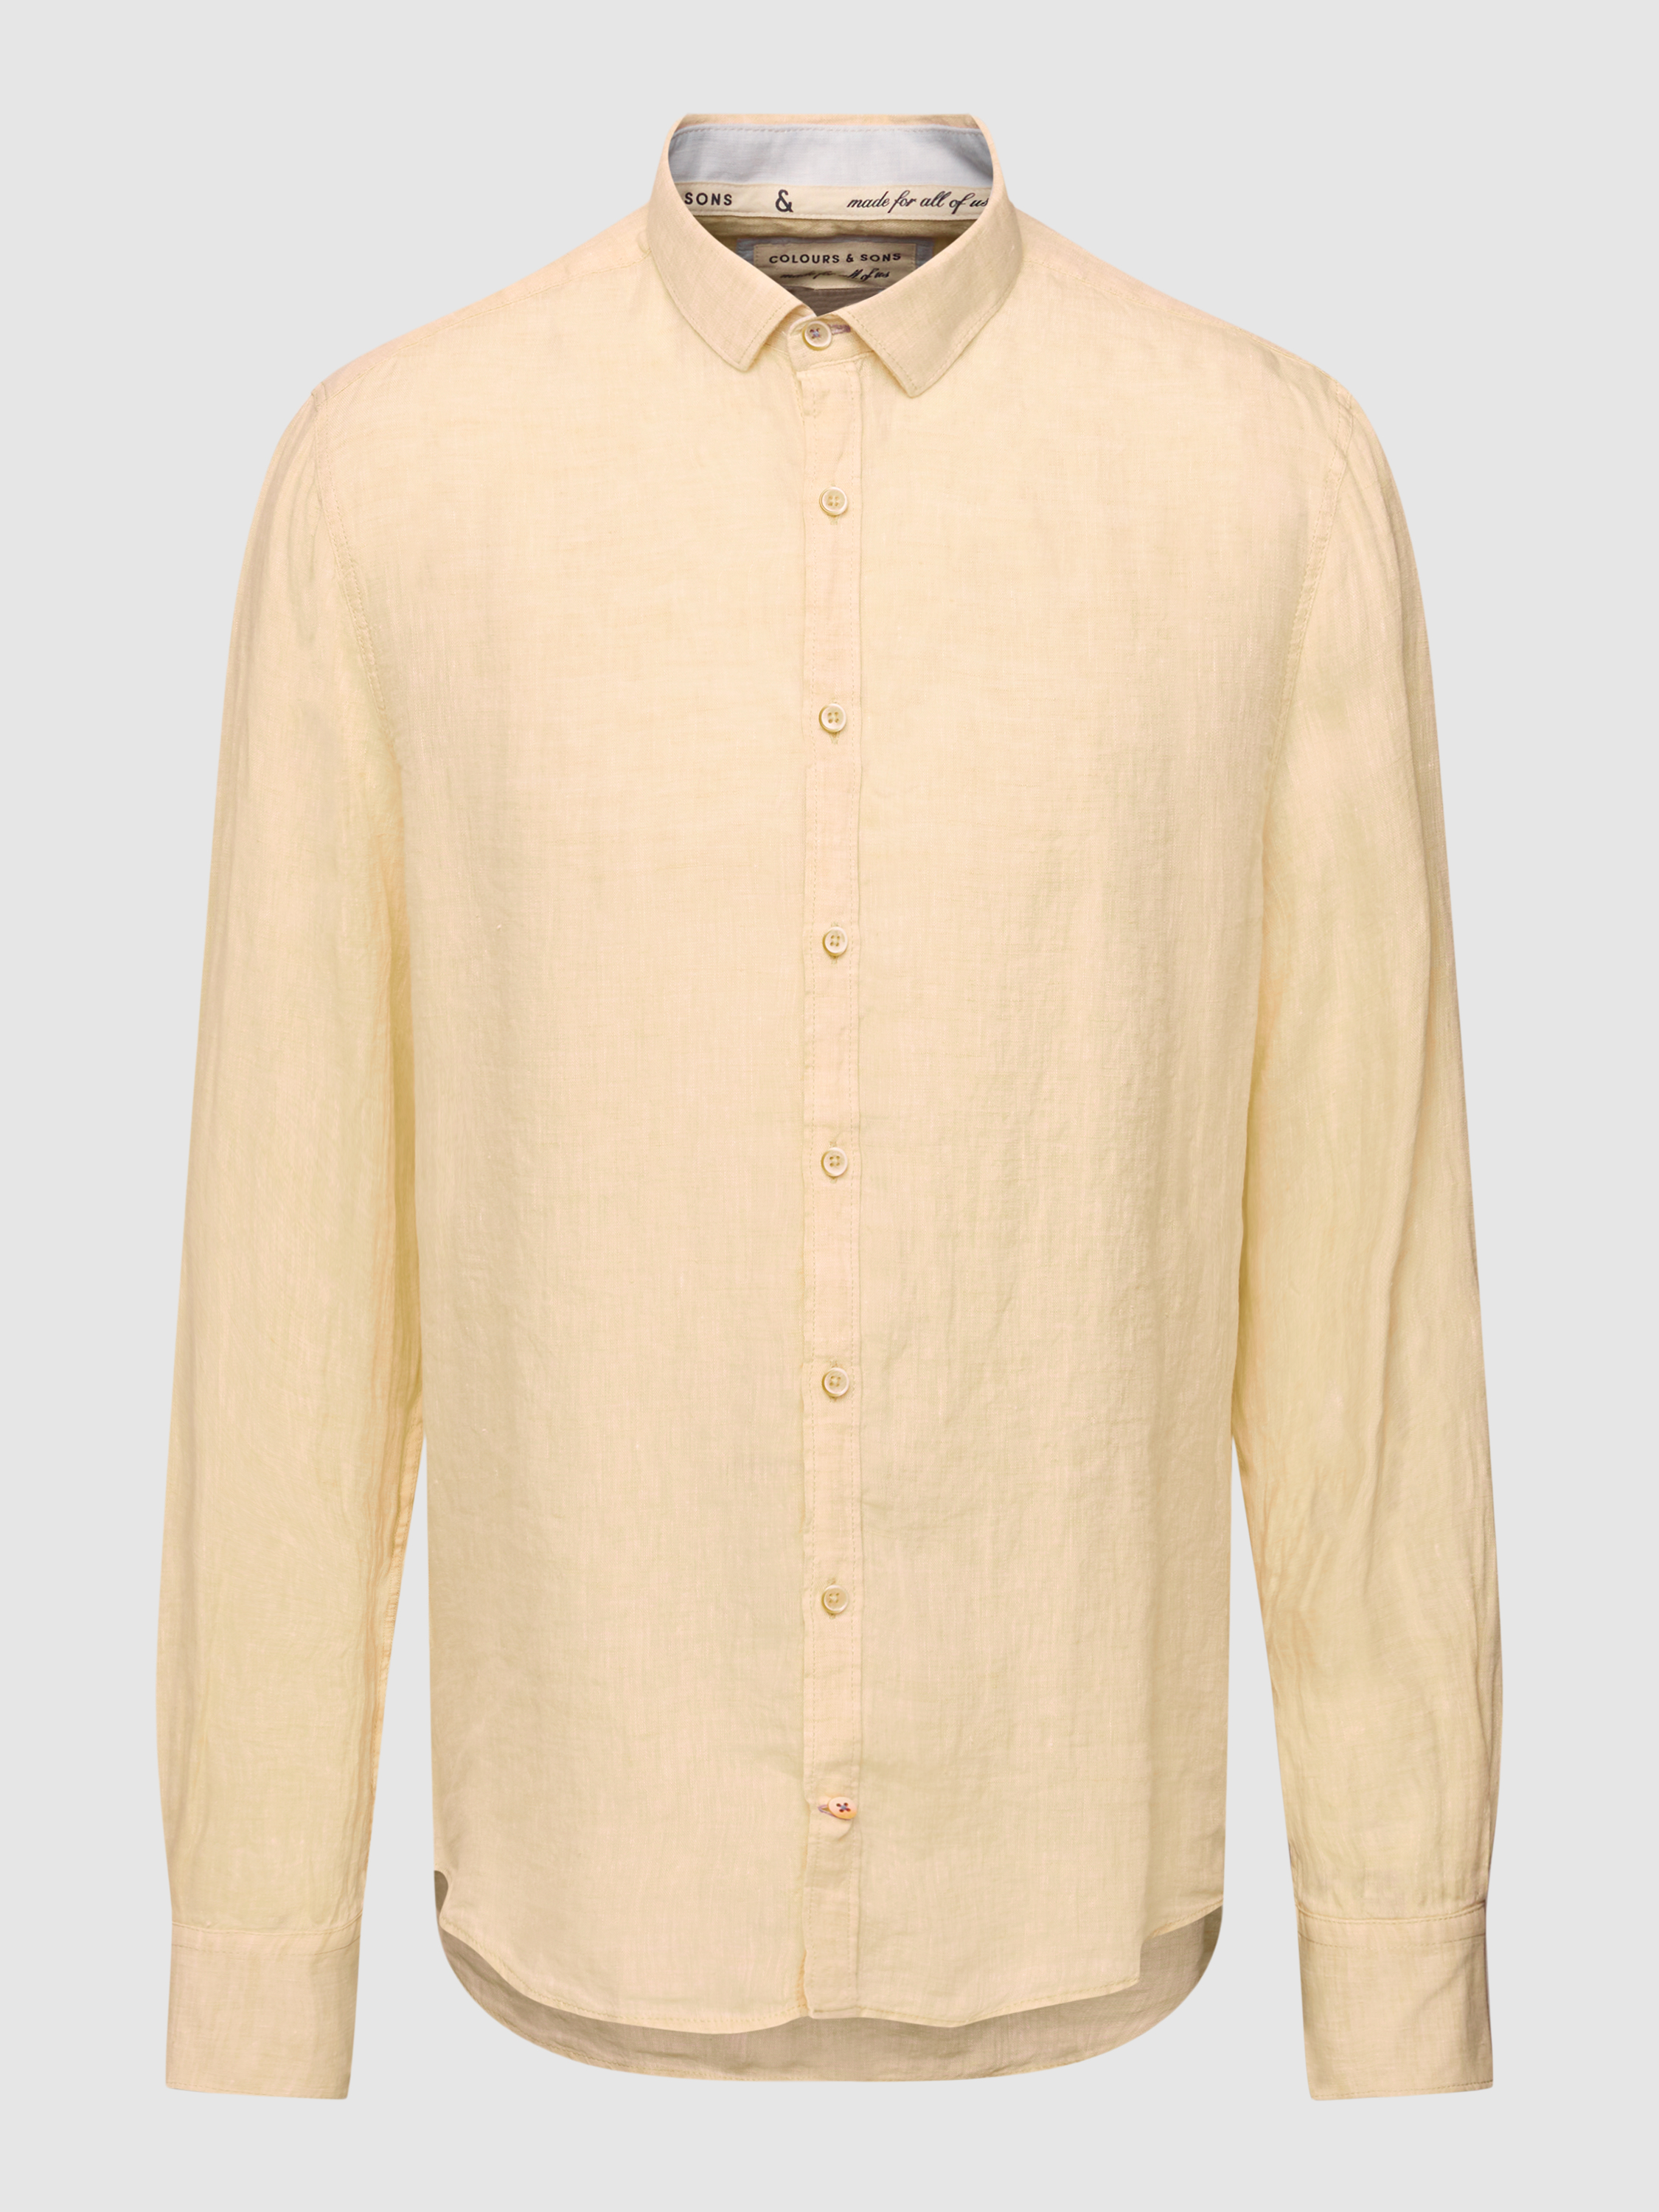 Рубашка мужская Colours & sons 1780362 желтая 3XL (доставка из-за рубежа)